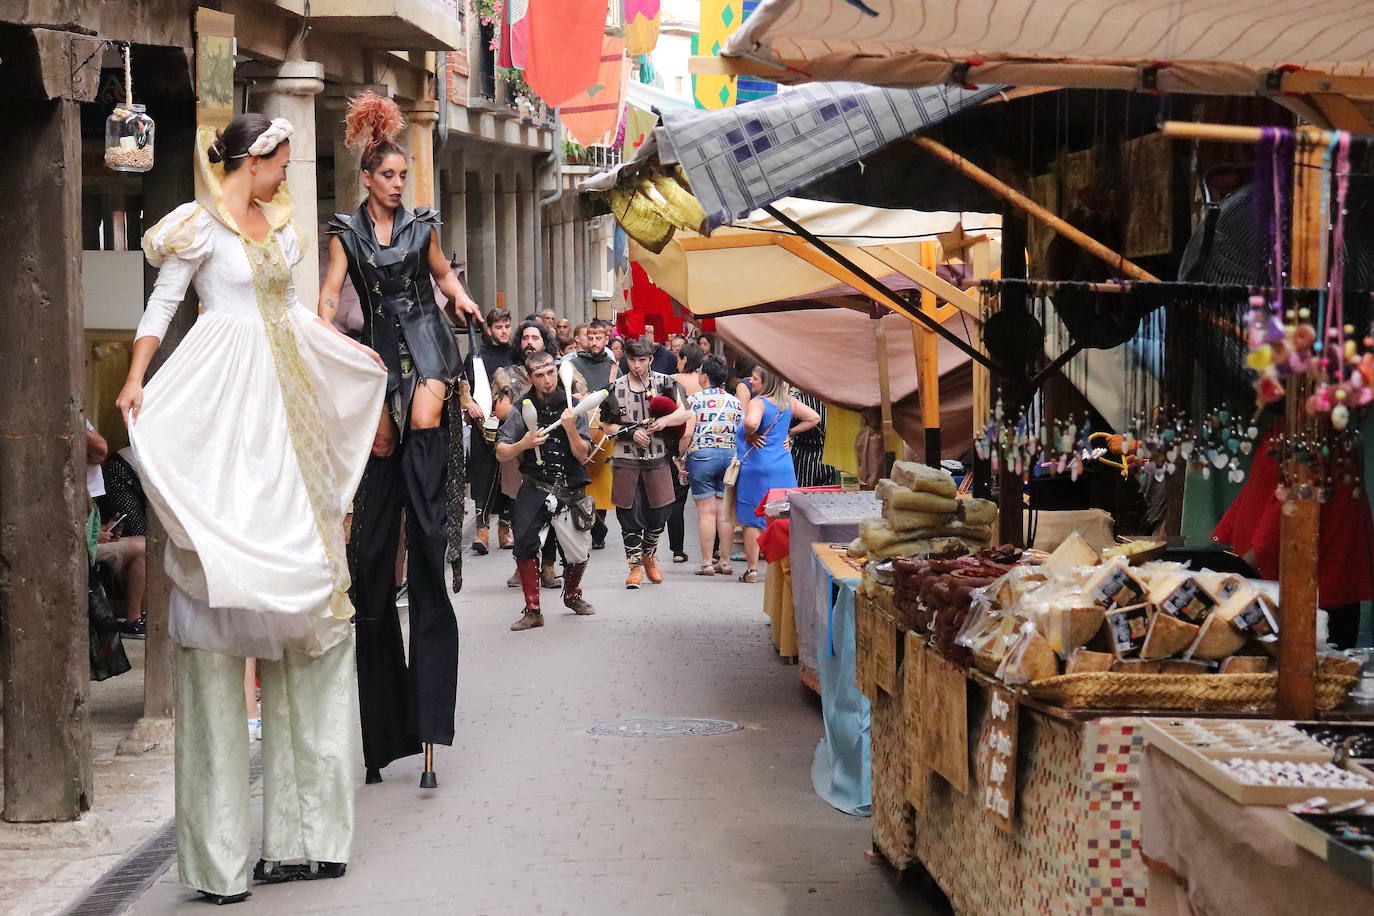 Fotos: Mercado de la India Chica de Medina de Rioseco, 1 de 2